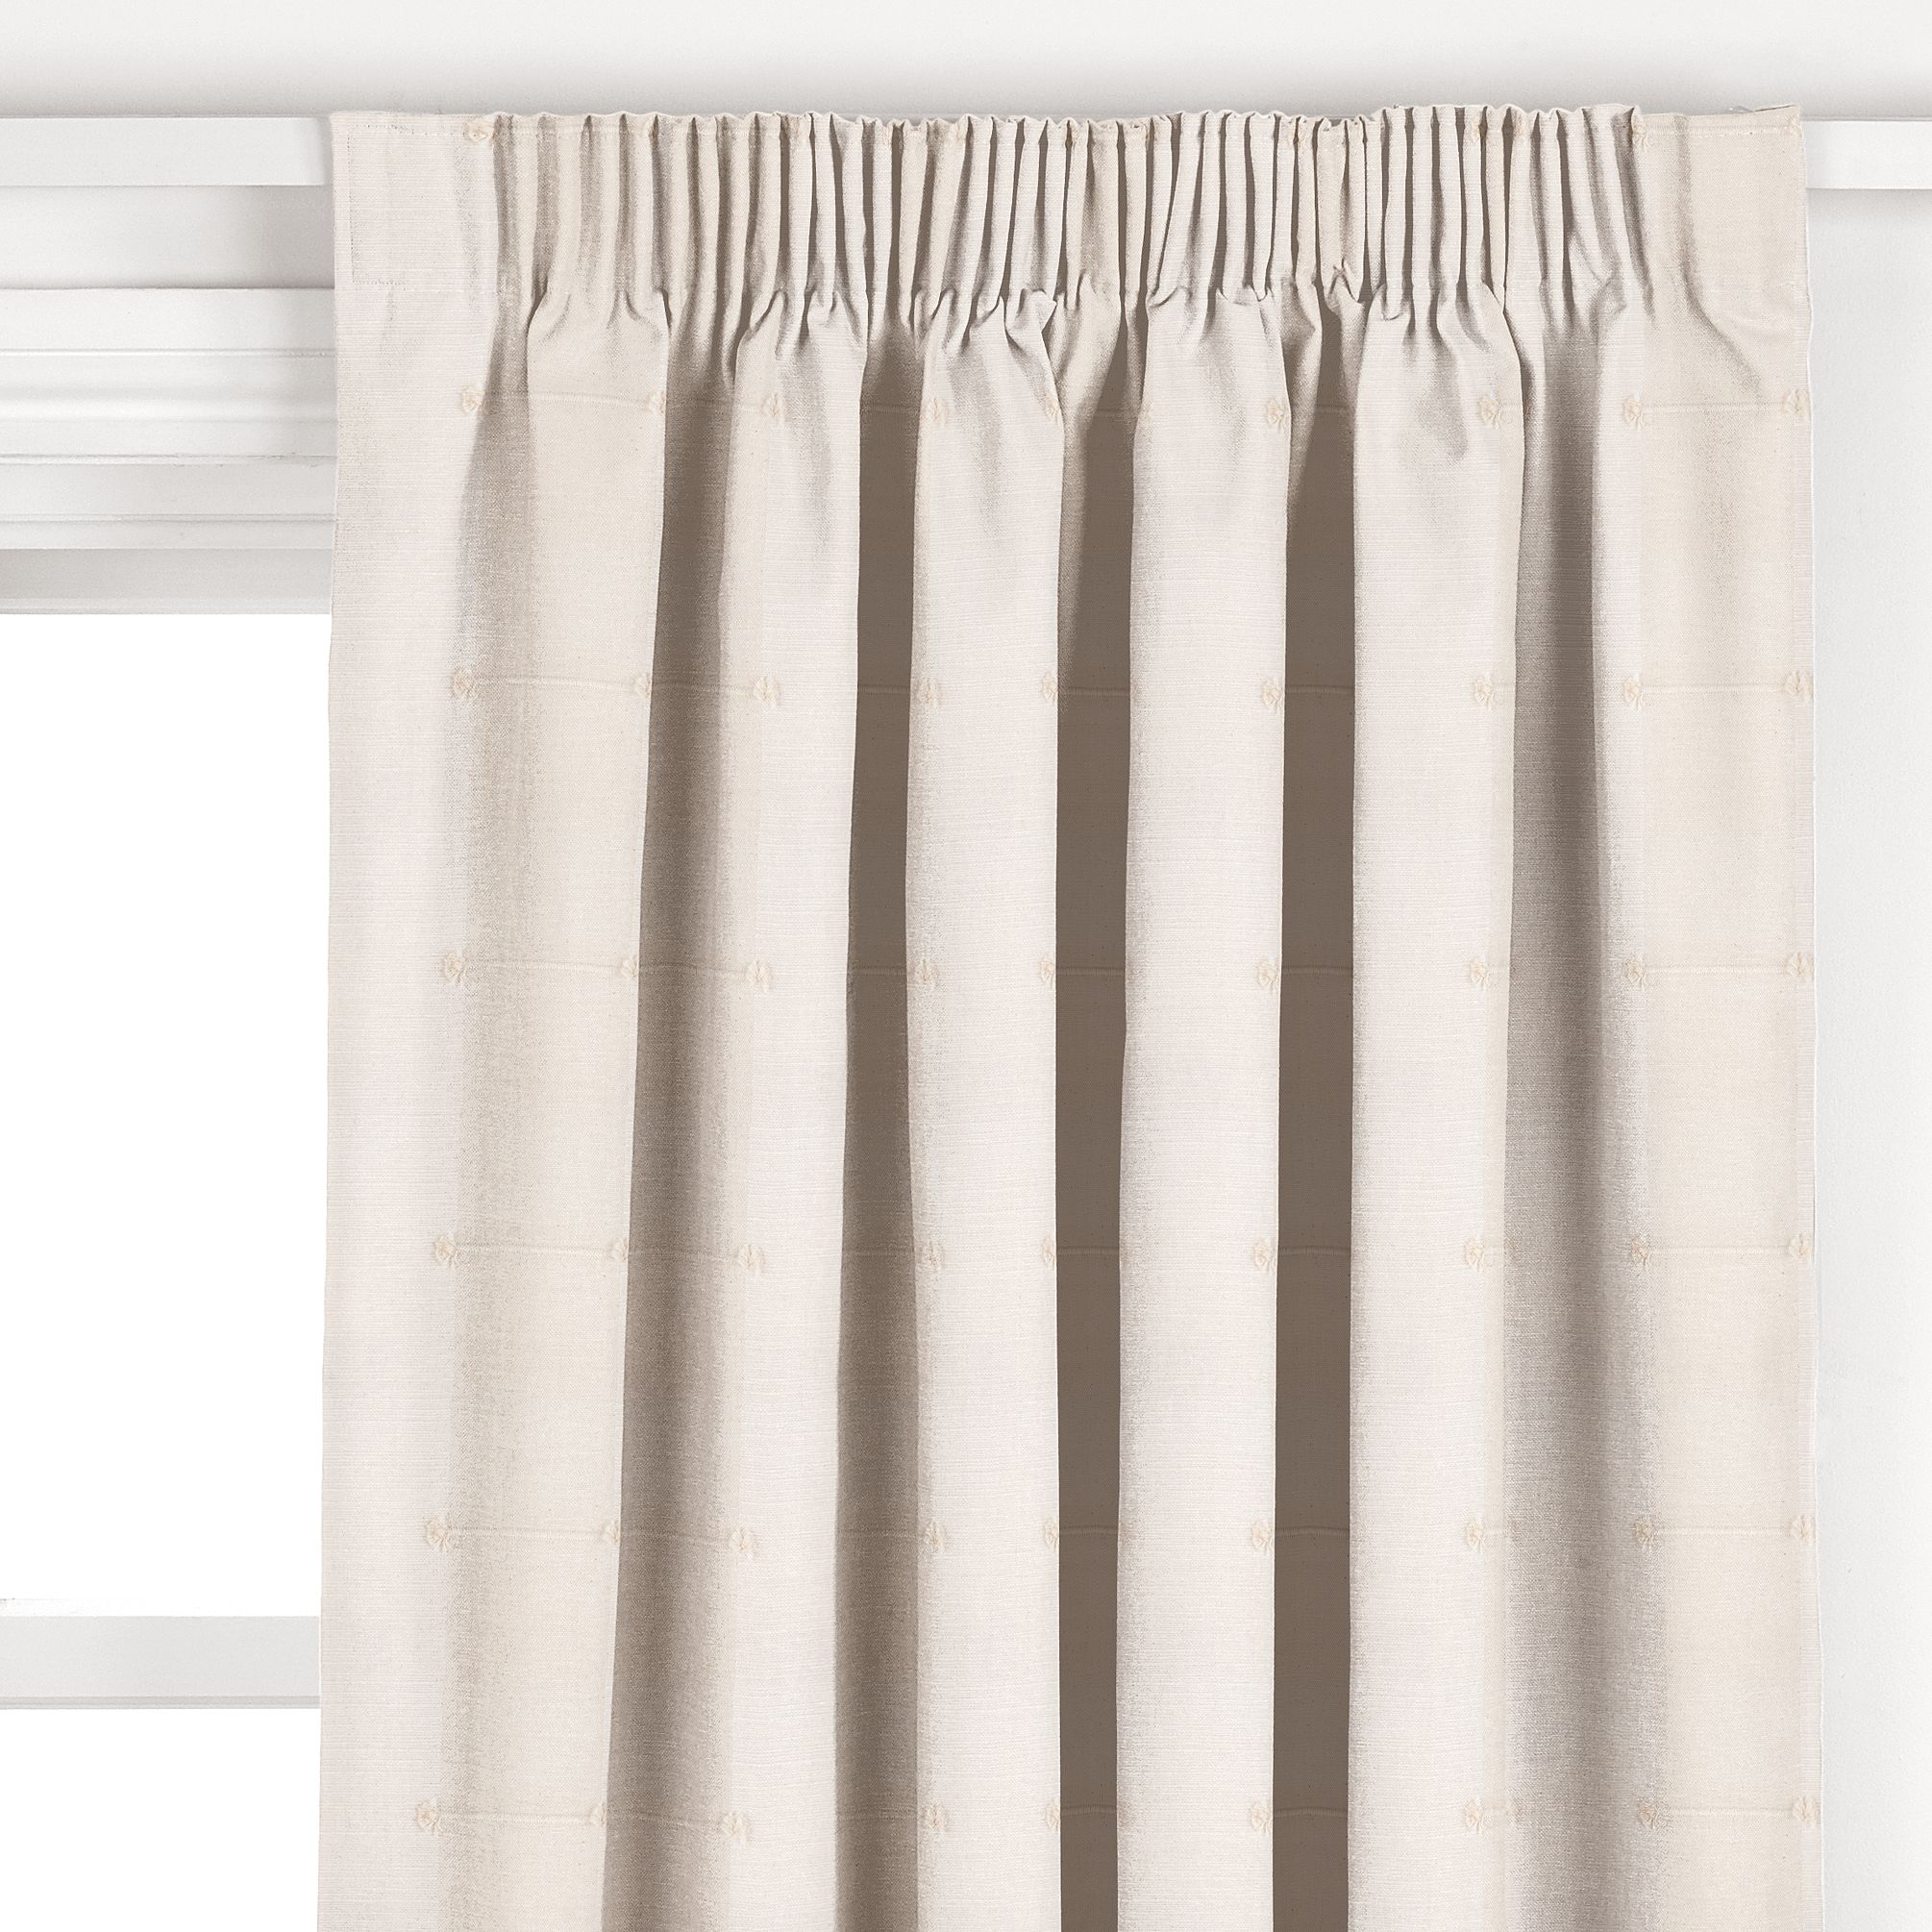 John Lewis Sierra Pencil Pleat Curtains, Natural